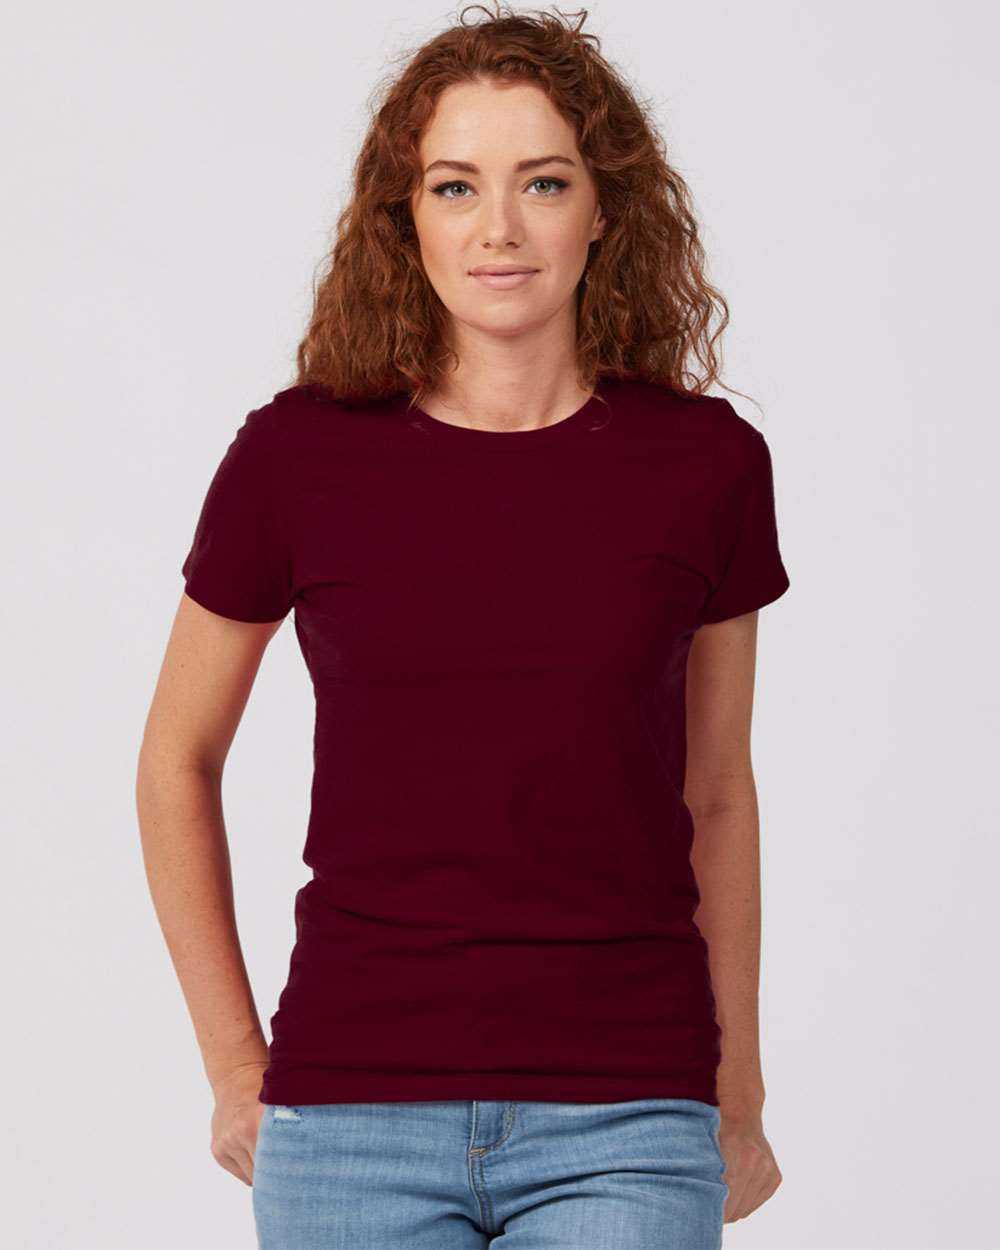 Tultex 516 Women's Premium Cotton T-Shirt - Burgundy - HIT a Double